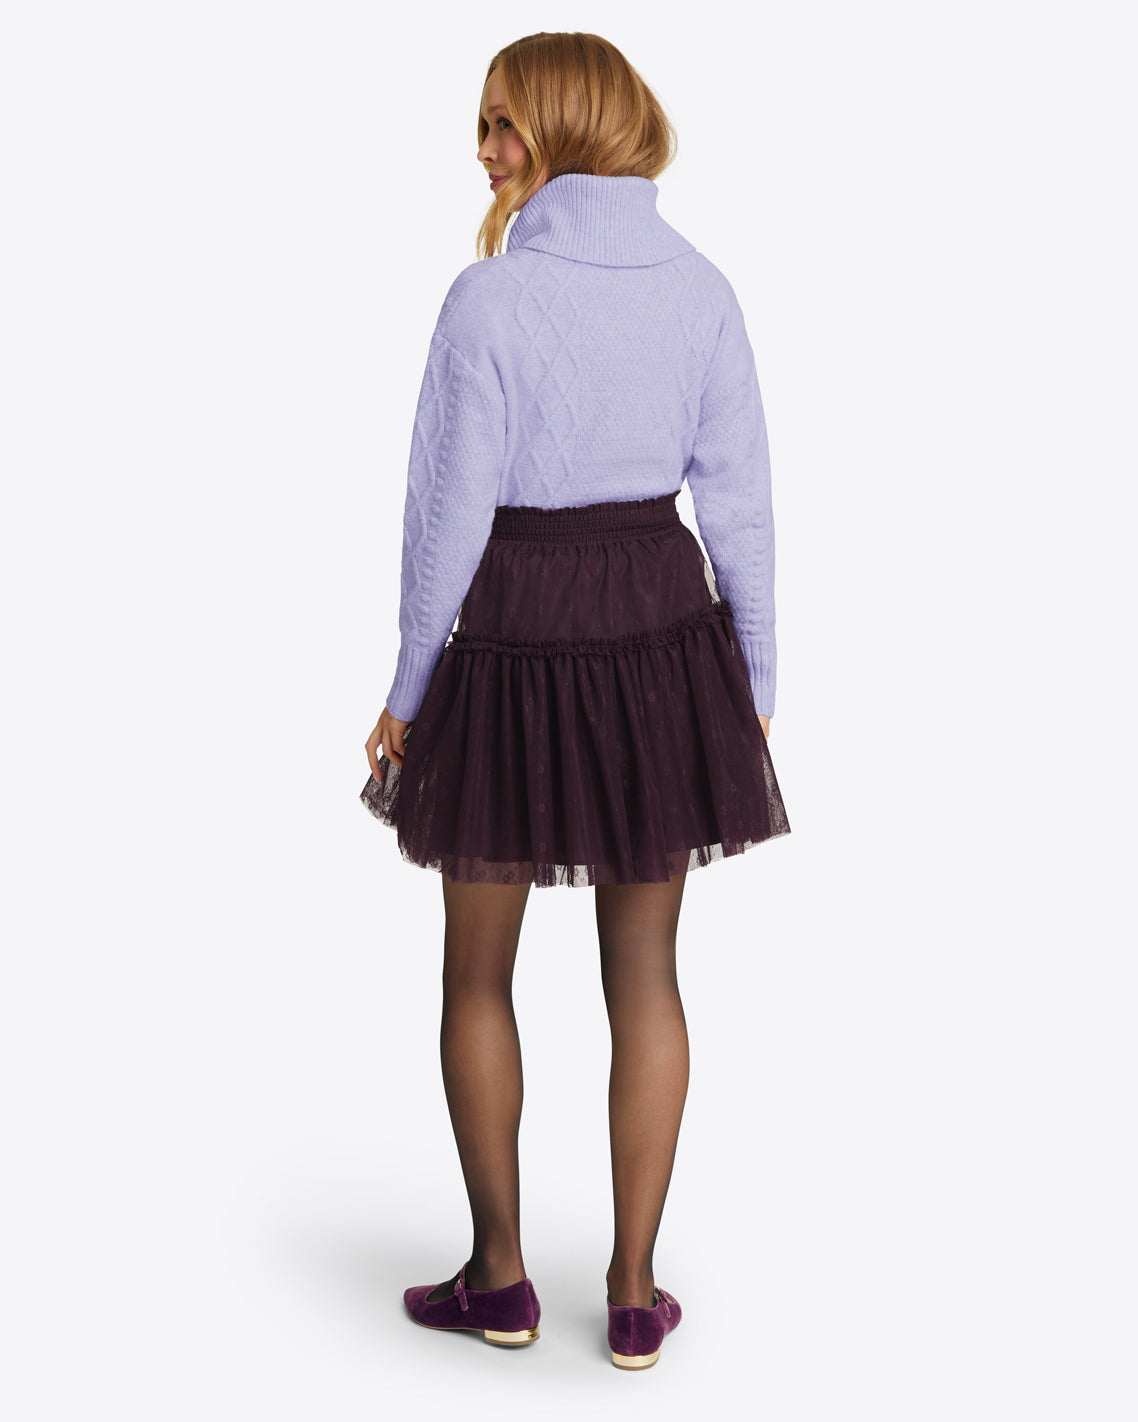 Mini Tiered Skirt in Plum Tulle